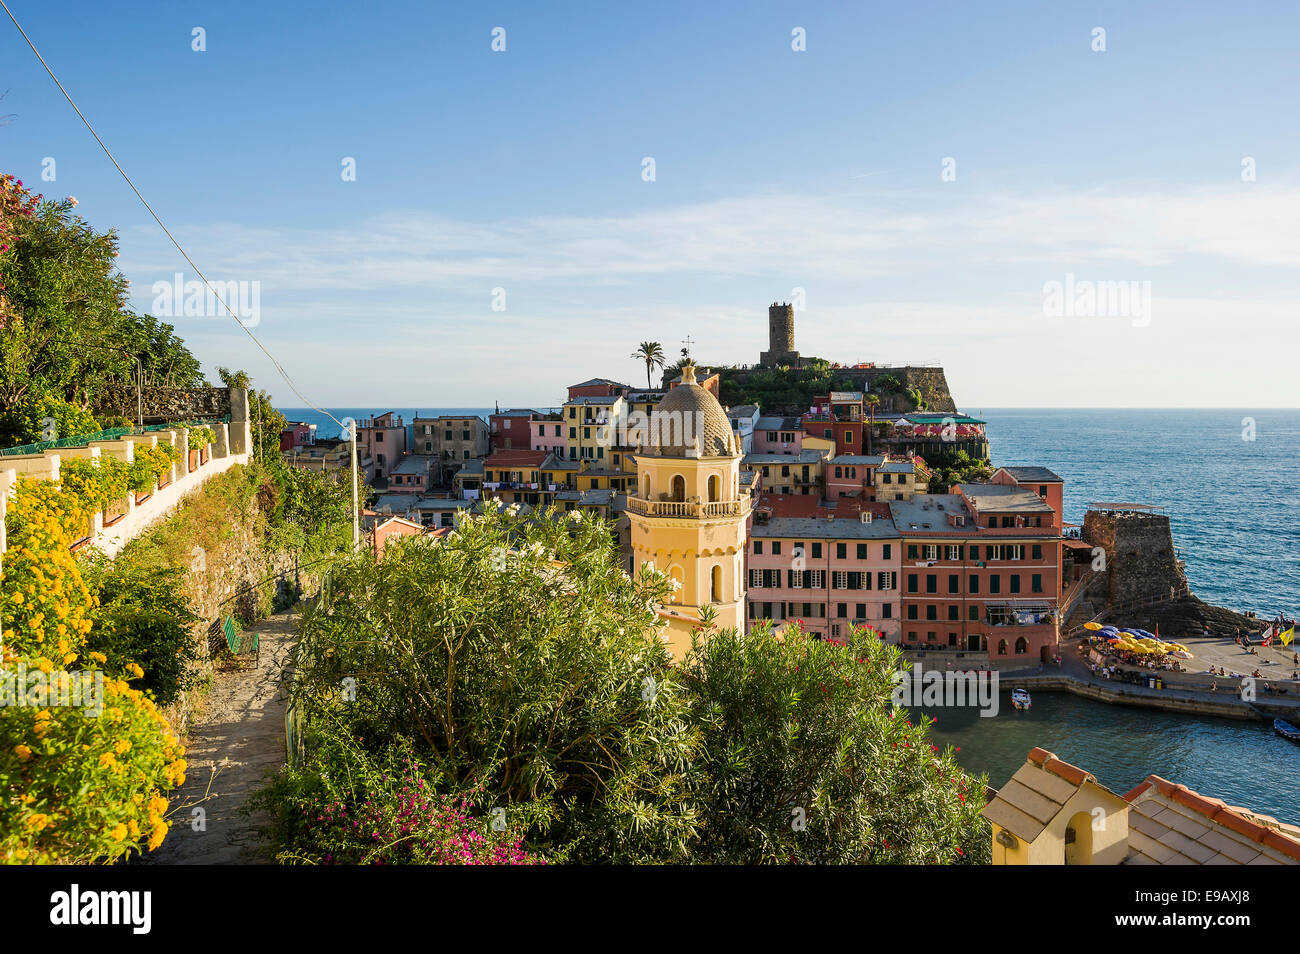 Villaggio con case colorate vicino al mare, Vernazza, Cinque Terre Provincia della Spezia, Liguria, Italia Foto Stock